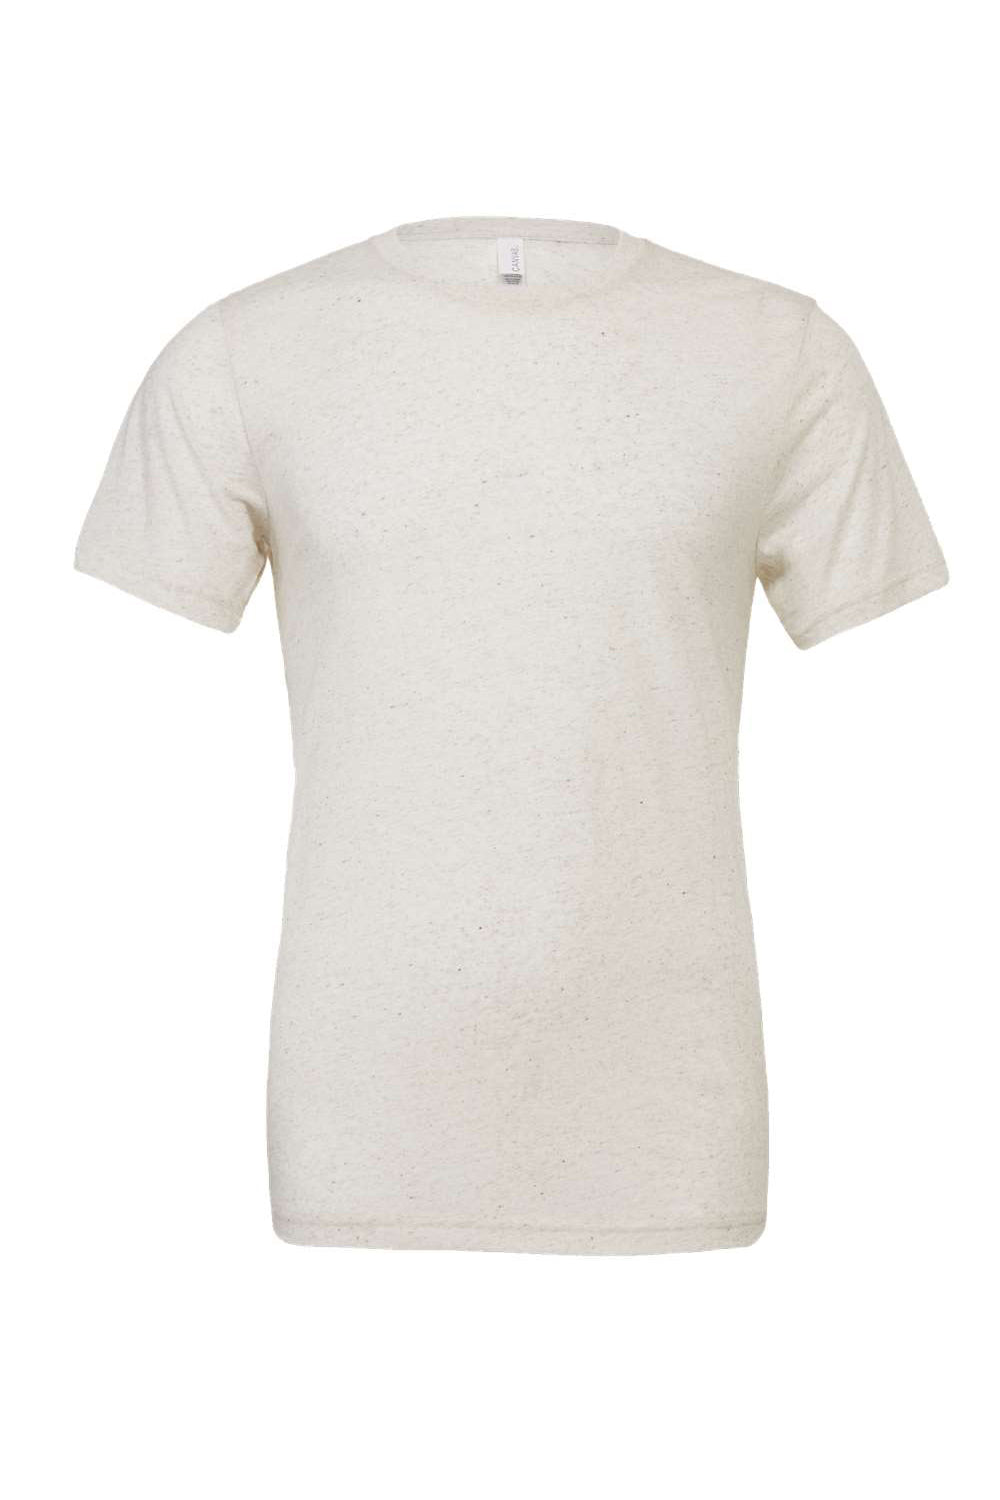 Bella + Canvas BC3413/3413C/3413 Mens Short Sleeve Crewneck T-Shirt Oatmeal Flat Front